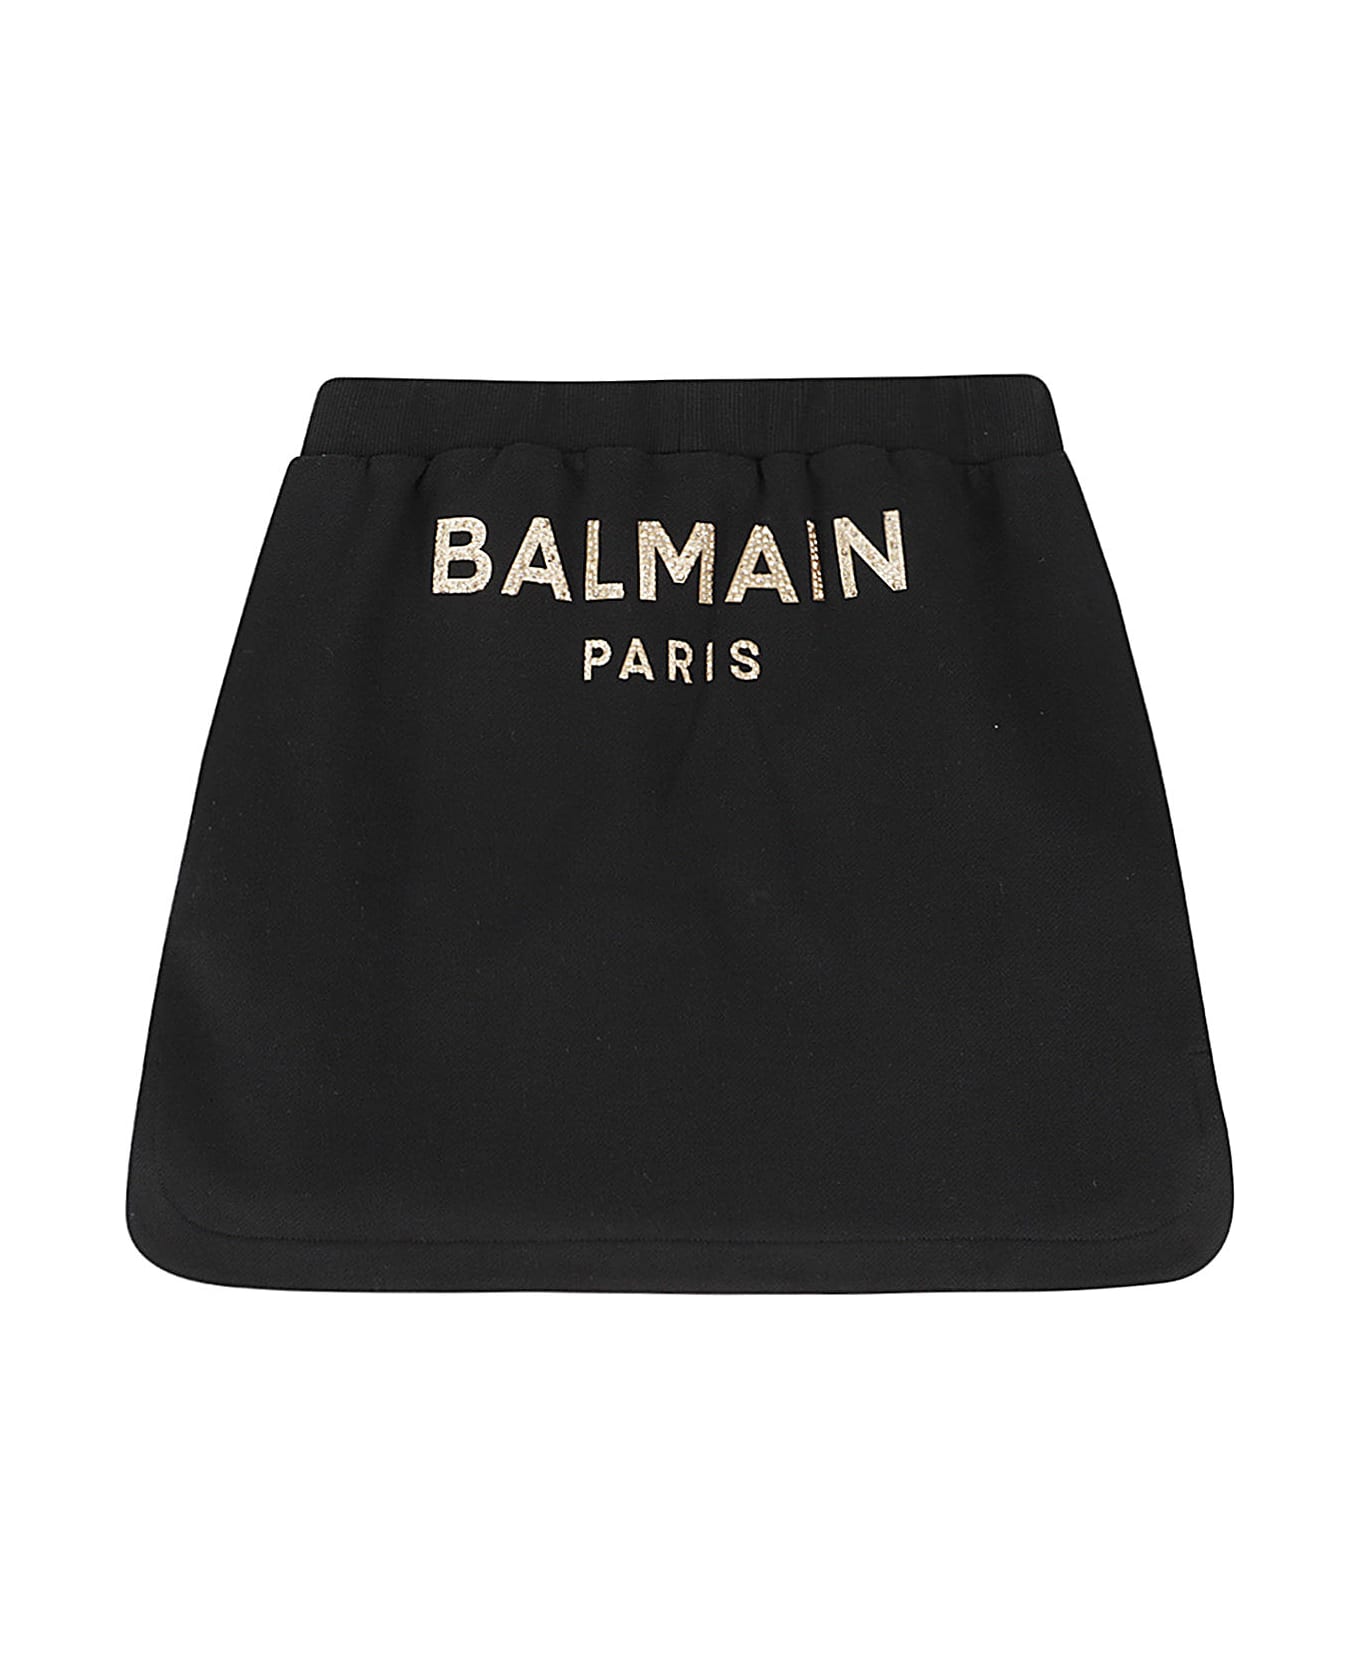 Balmain Skirt - Or Black Gold